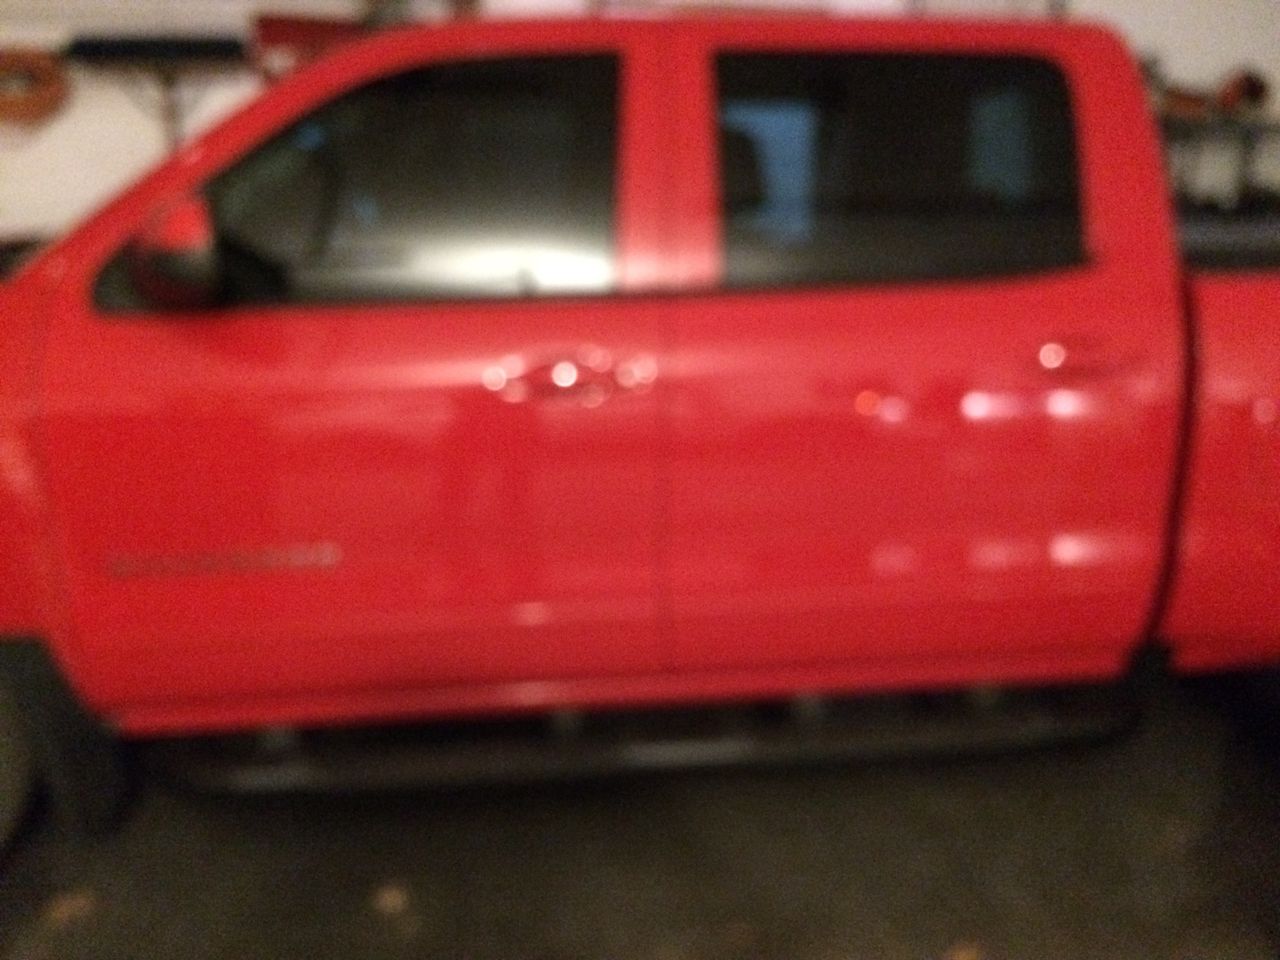 2017 Chevrolet Silverado 1500 | Harrisburg, SD, Red Hot (Red & Orange), 4x4